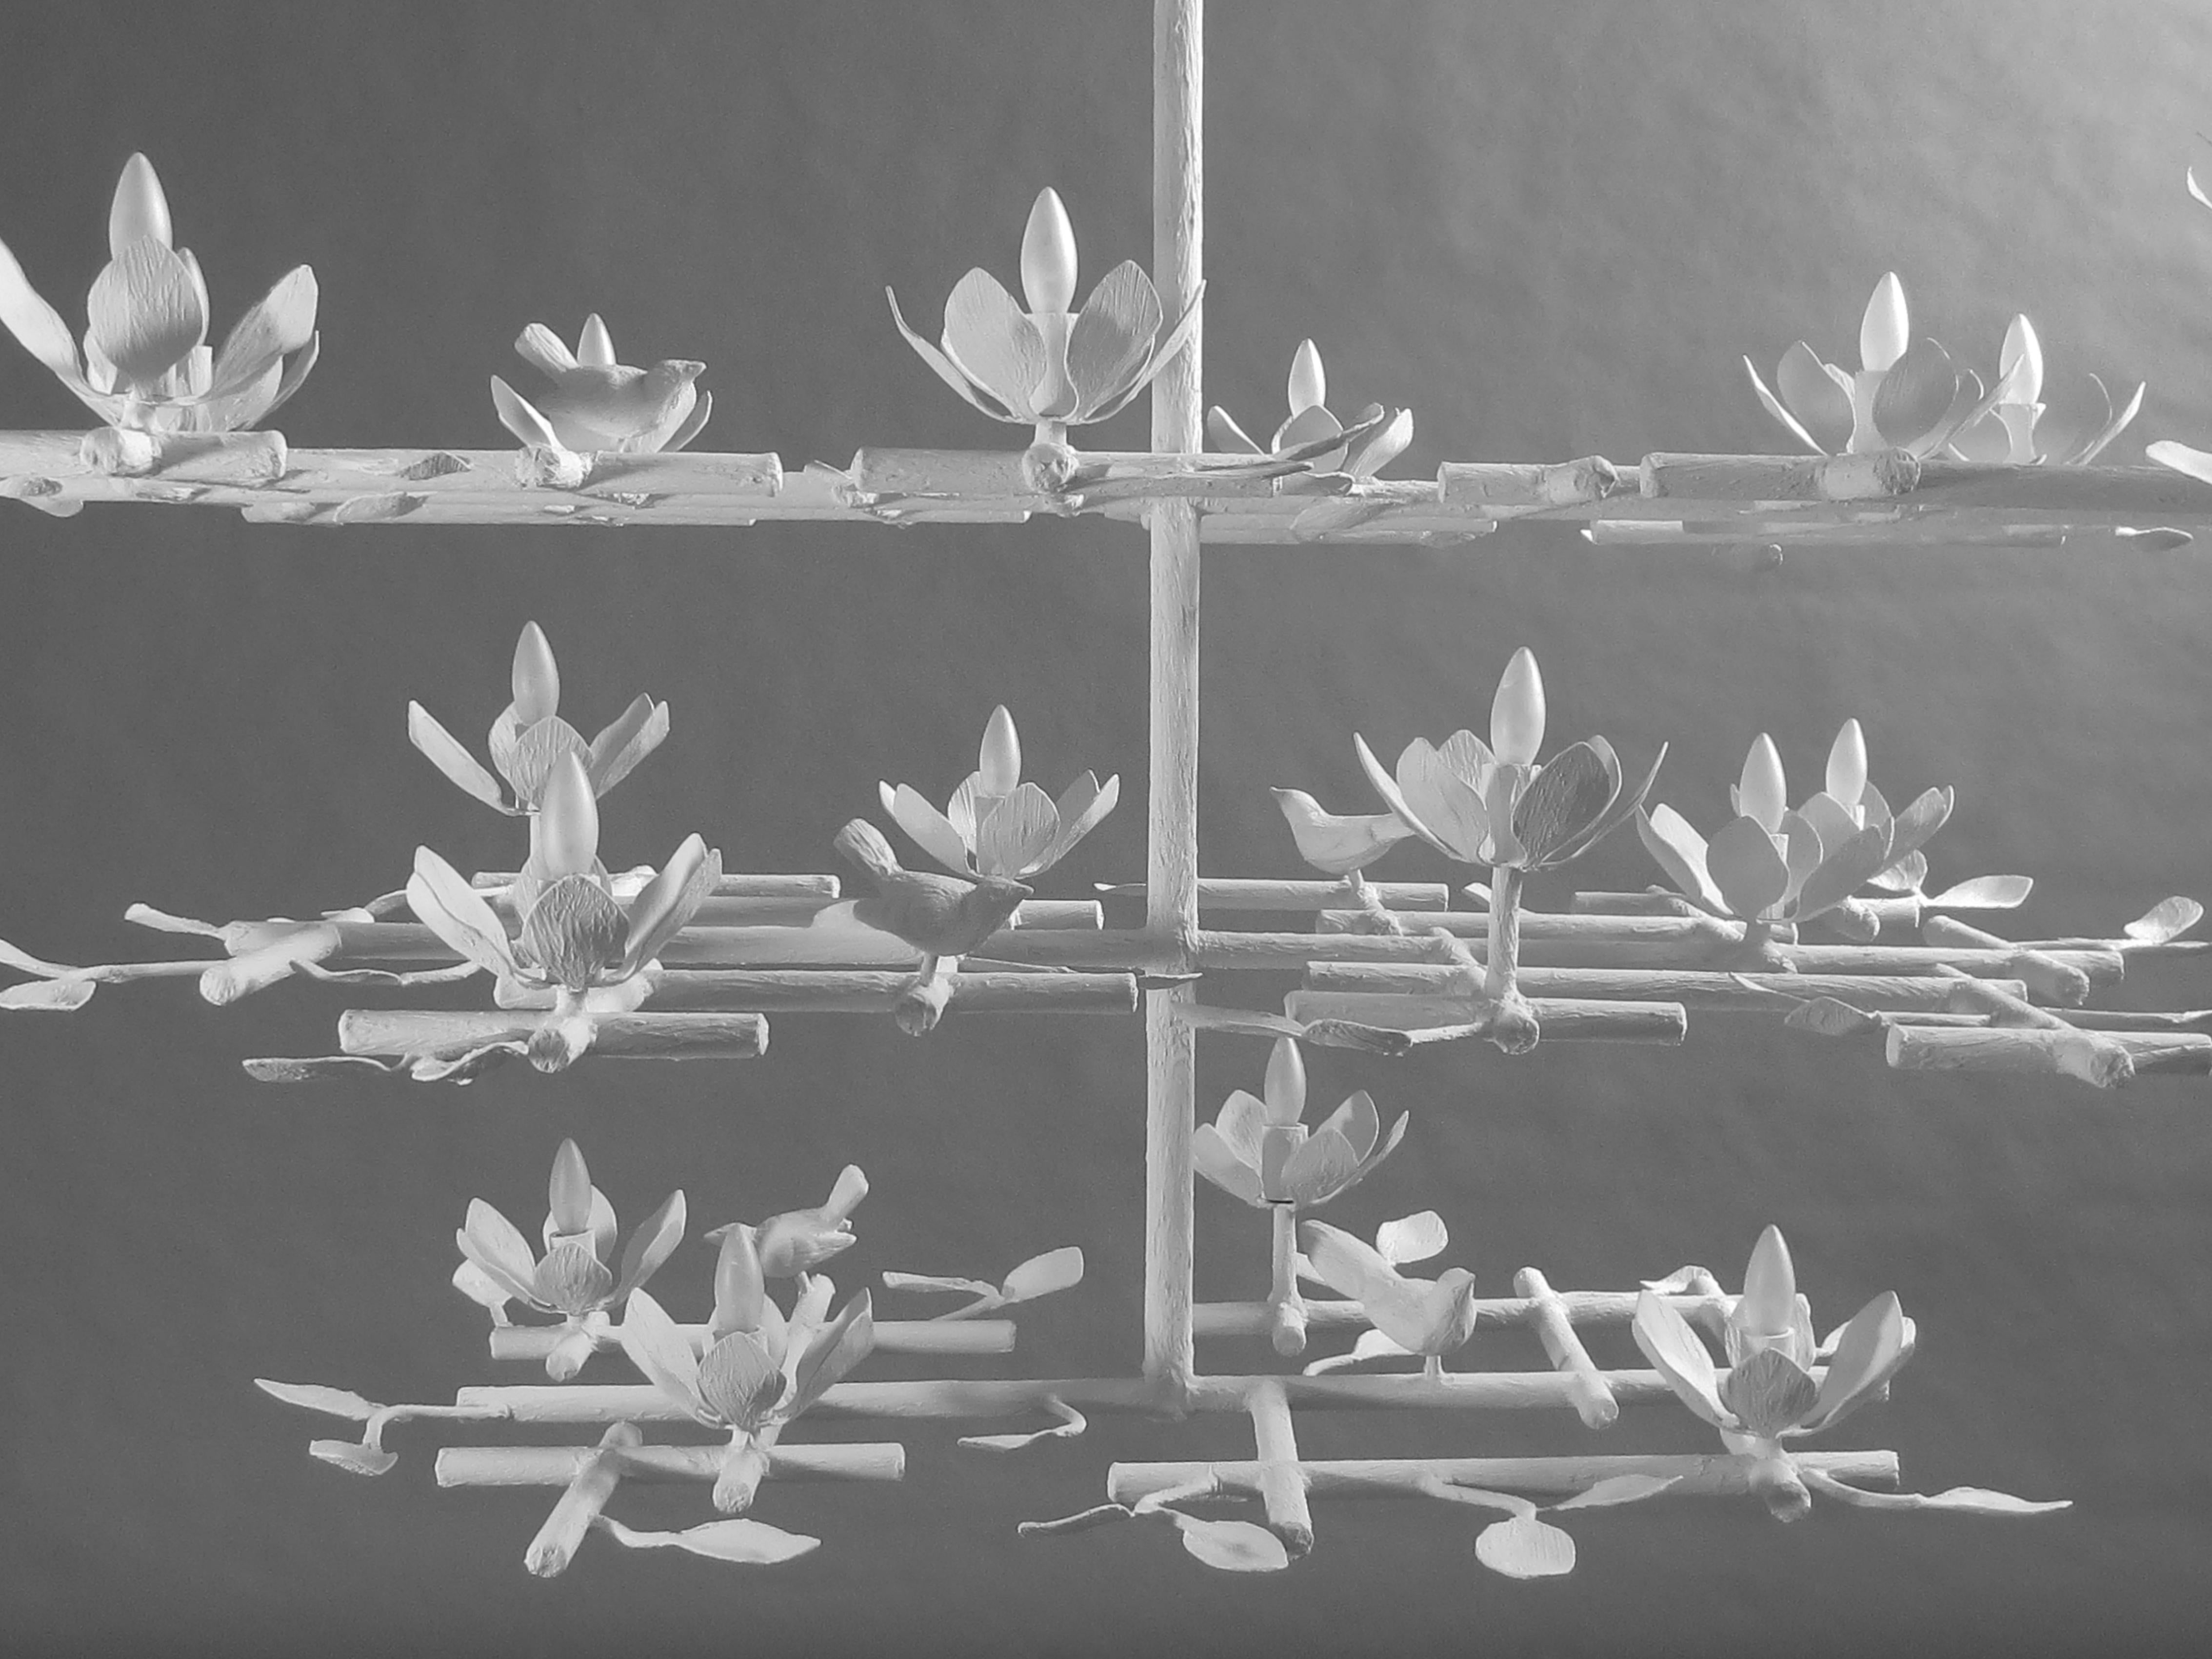 lustre en plâtre de jardin à 3 niveaux de Tracey Garet d'Apsara Interiors.
Ce lustre de jardin comporte 3 couches et est présenté dans une finition émaillée blanche. Les oiseaux et les fleurs sont détaillés partout. Les 18 fleurs contiennent chacune